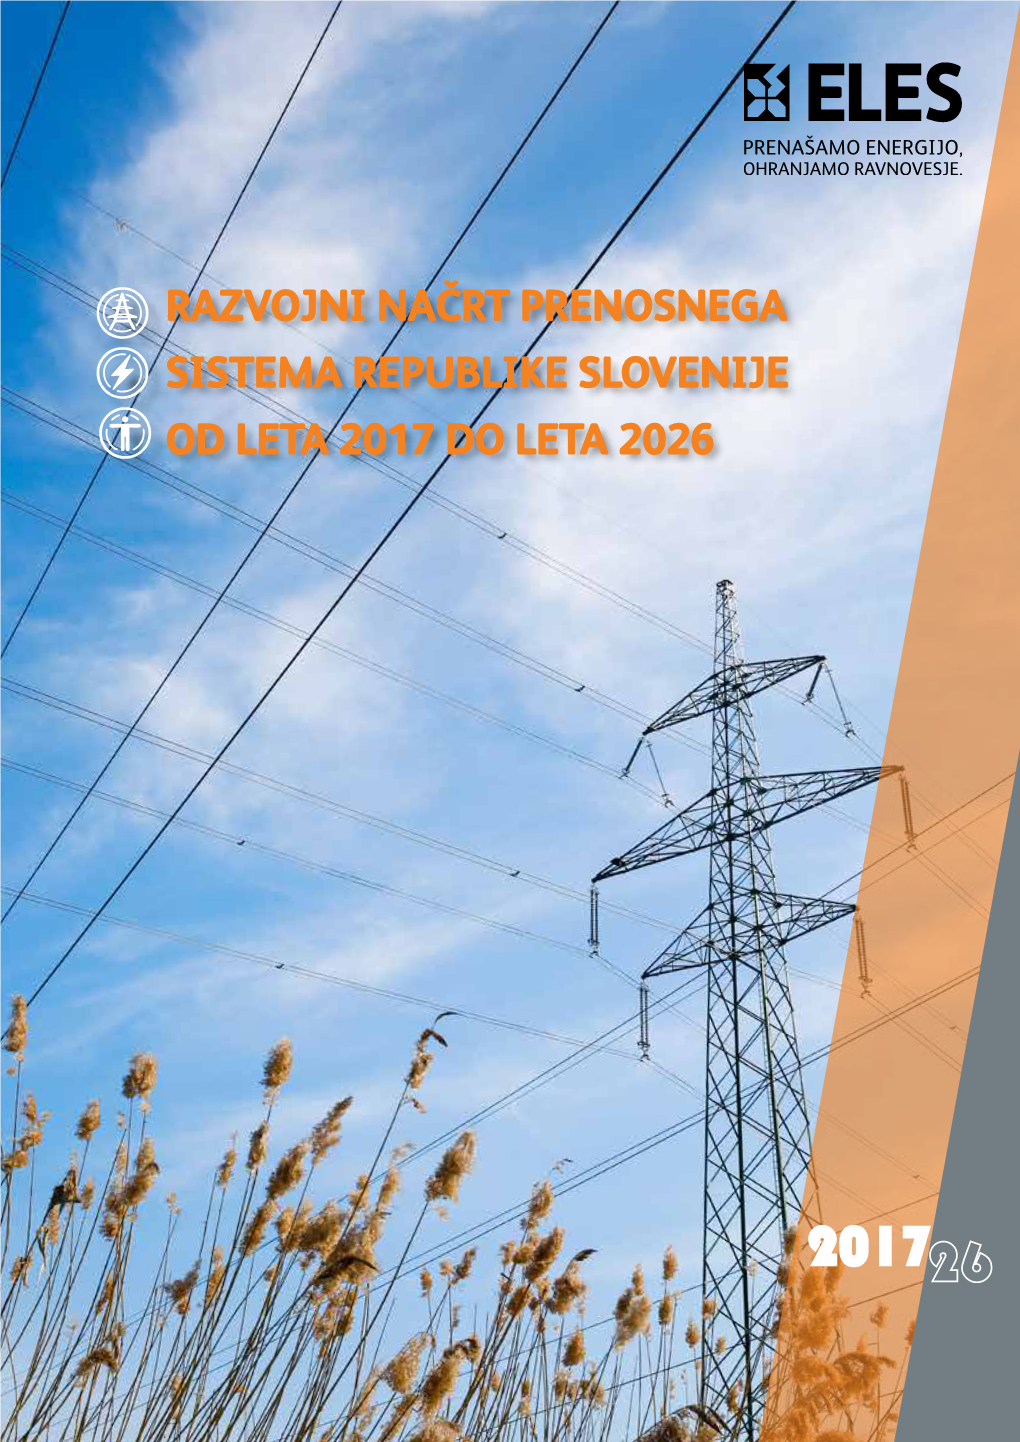 Razvojni Načrt Prenosnega Sistema Republike Slovenije Od Leta 2017 Do Leta 2026